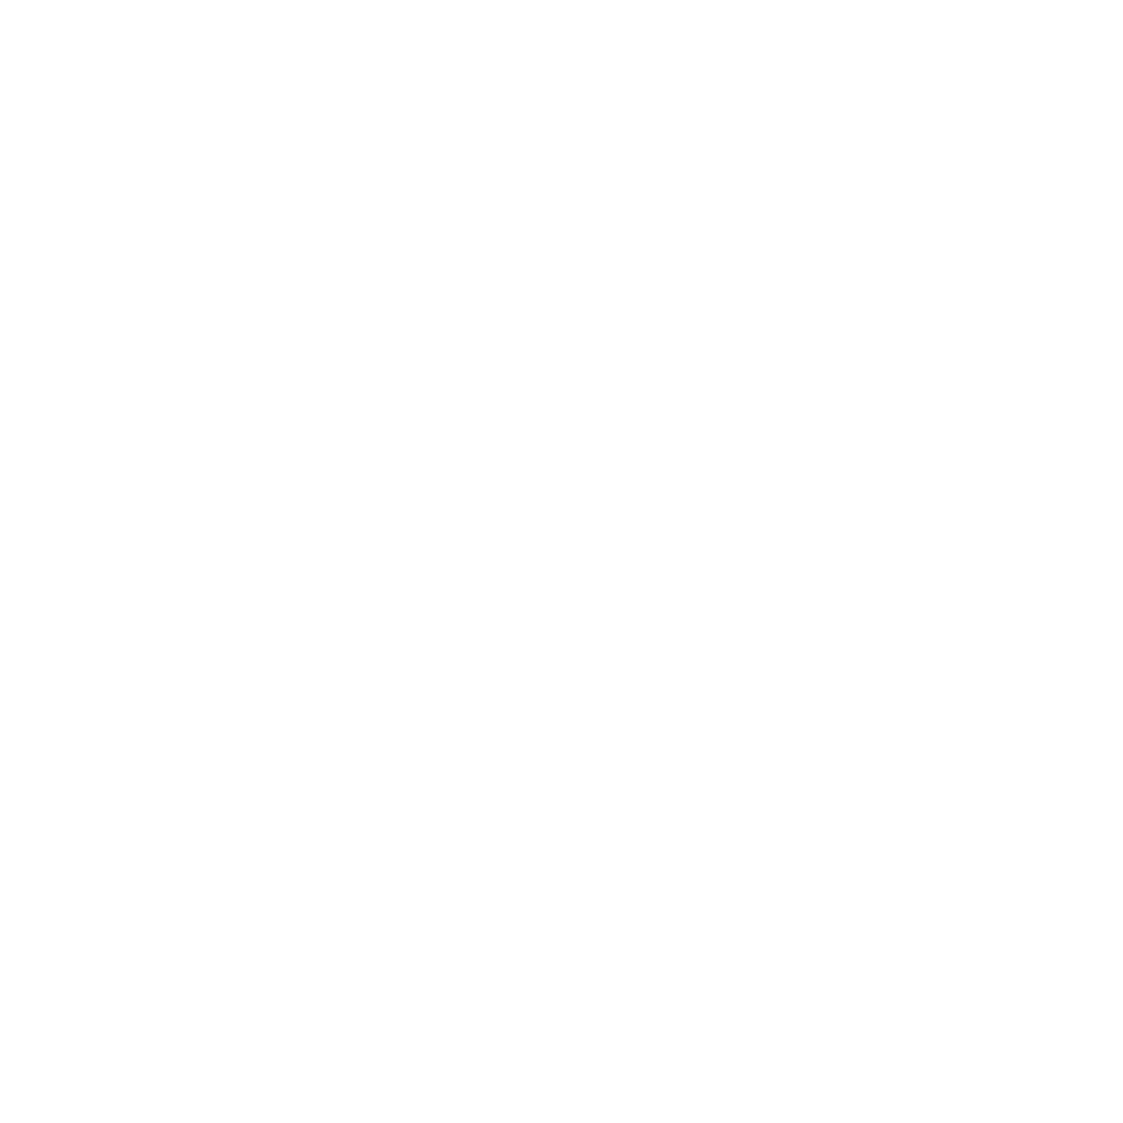 Neresparta Micropigmentación logo